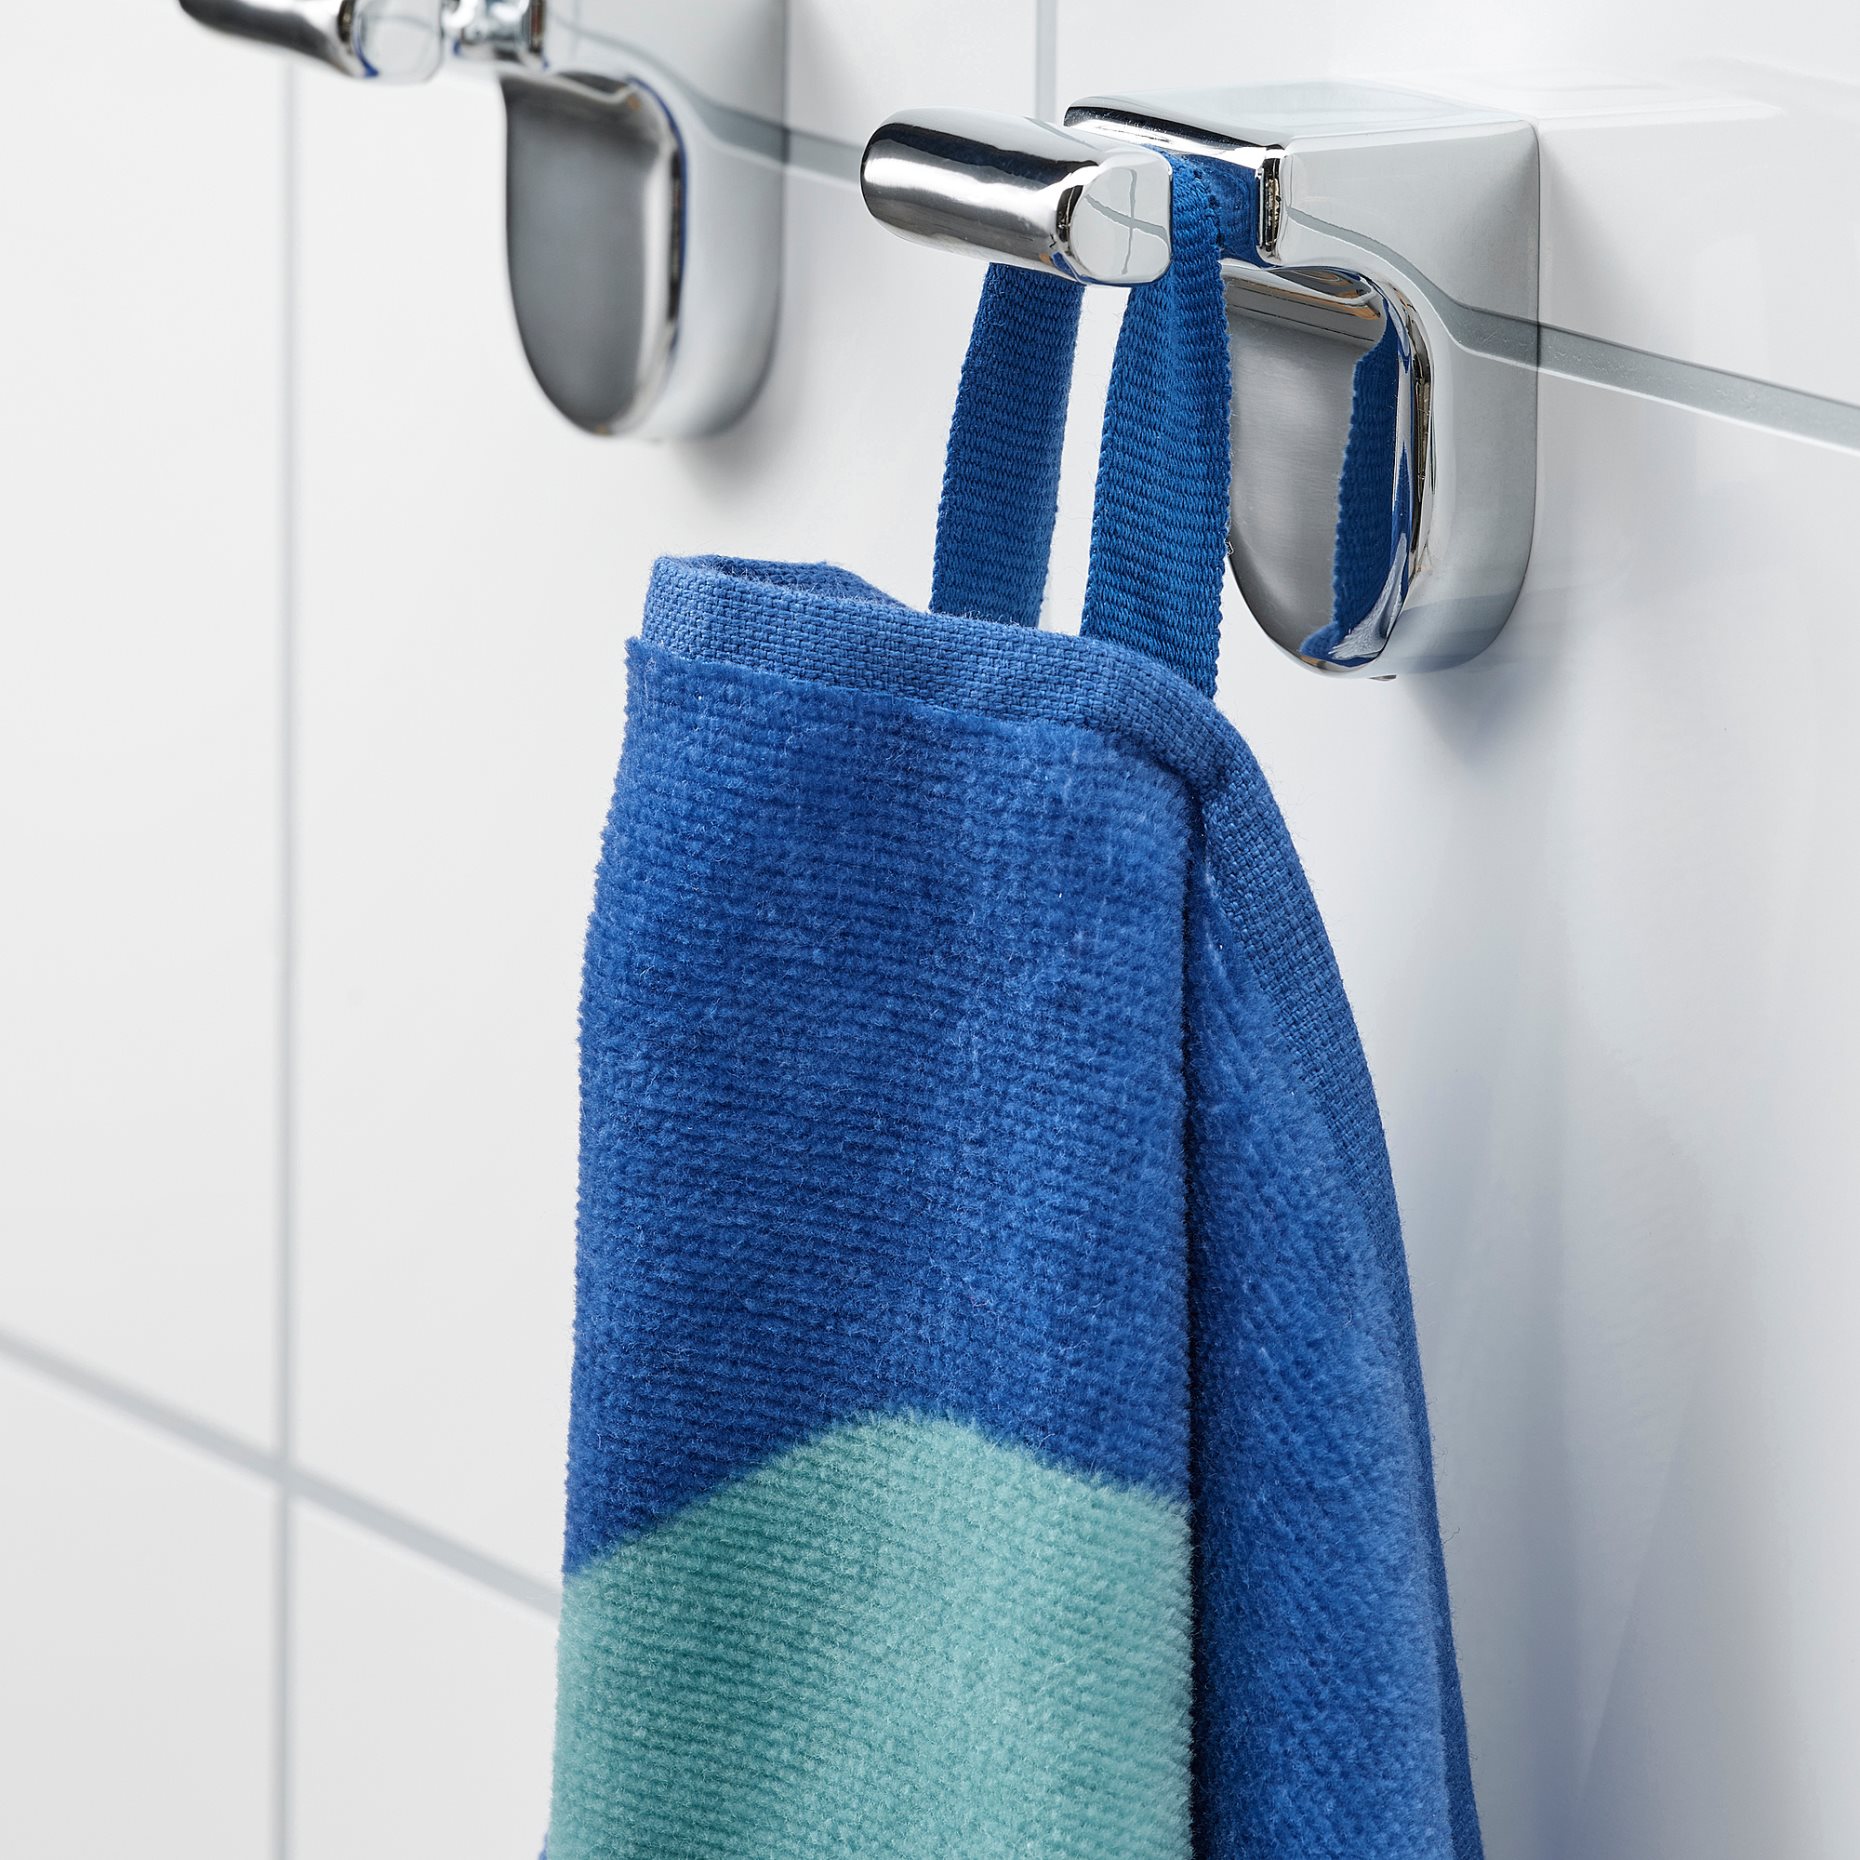 BLÅVINGAD, bath towel/turtle pattern, 70x140 cm, 605.340.66